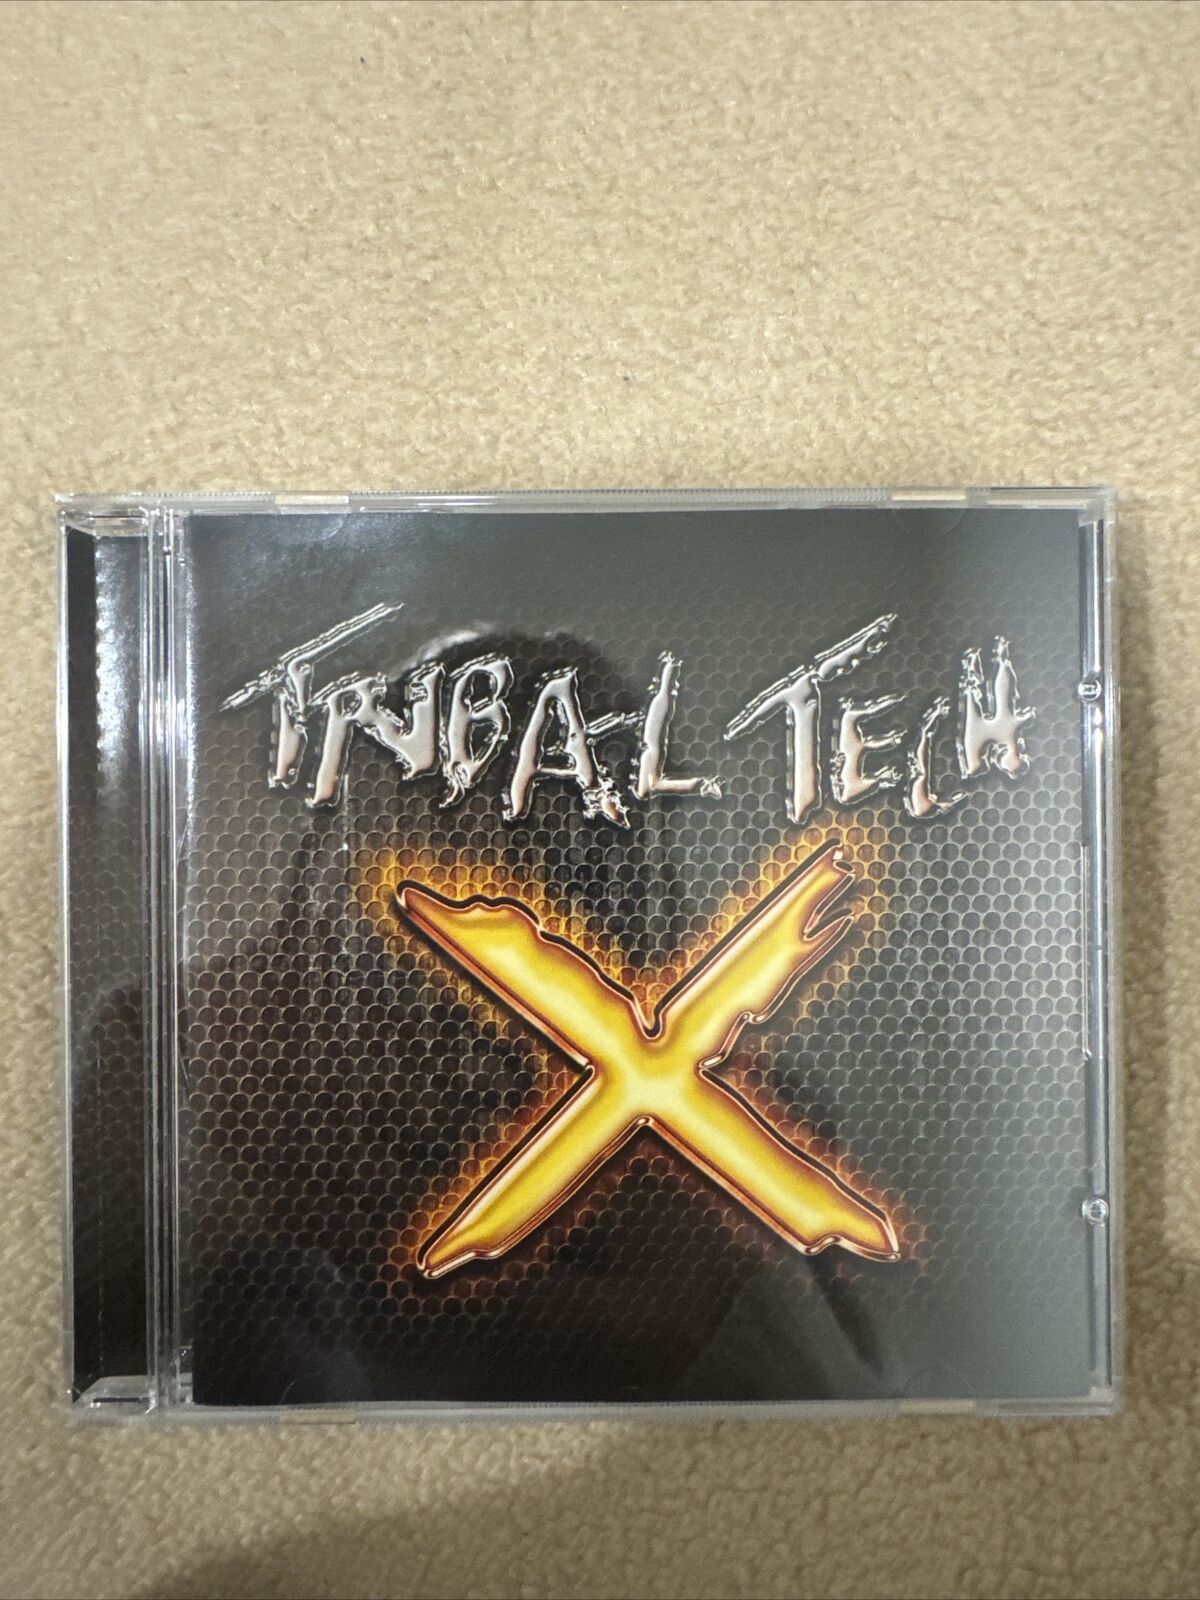 X by Tribal Tech (Jazz) (CD, 2012, Tone Center)